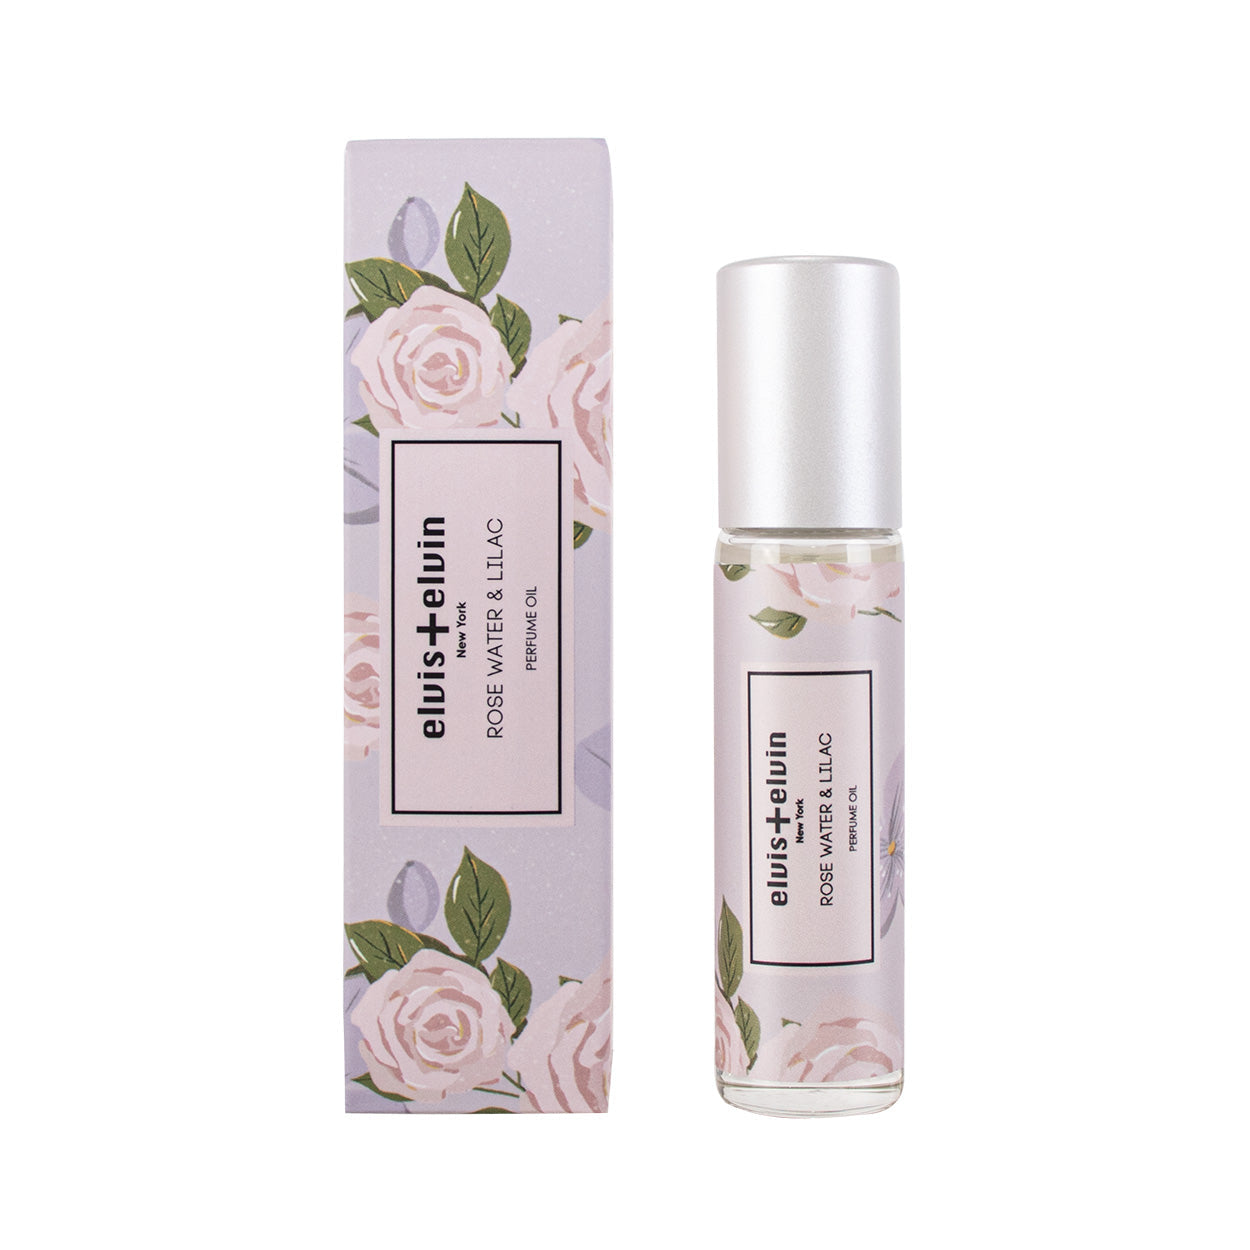  Perfume oil - Rose water & Lilac by elvis+elvin elvis+elvin Perfumarie